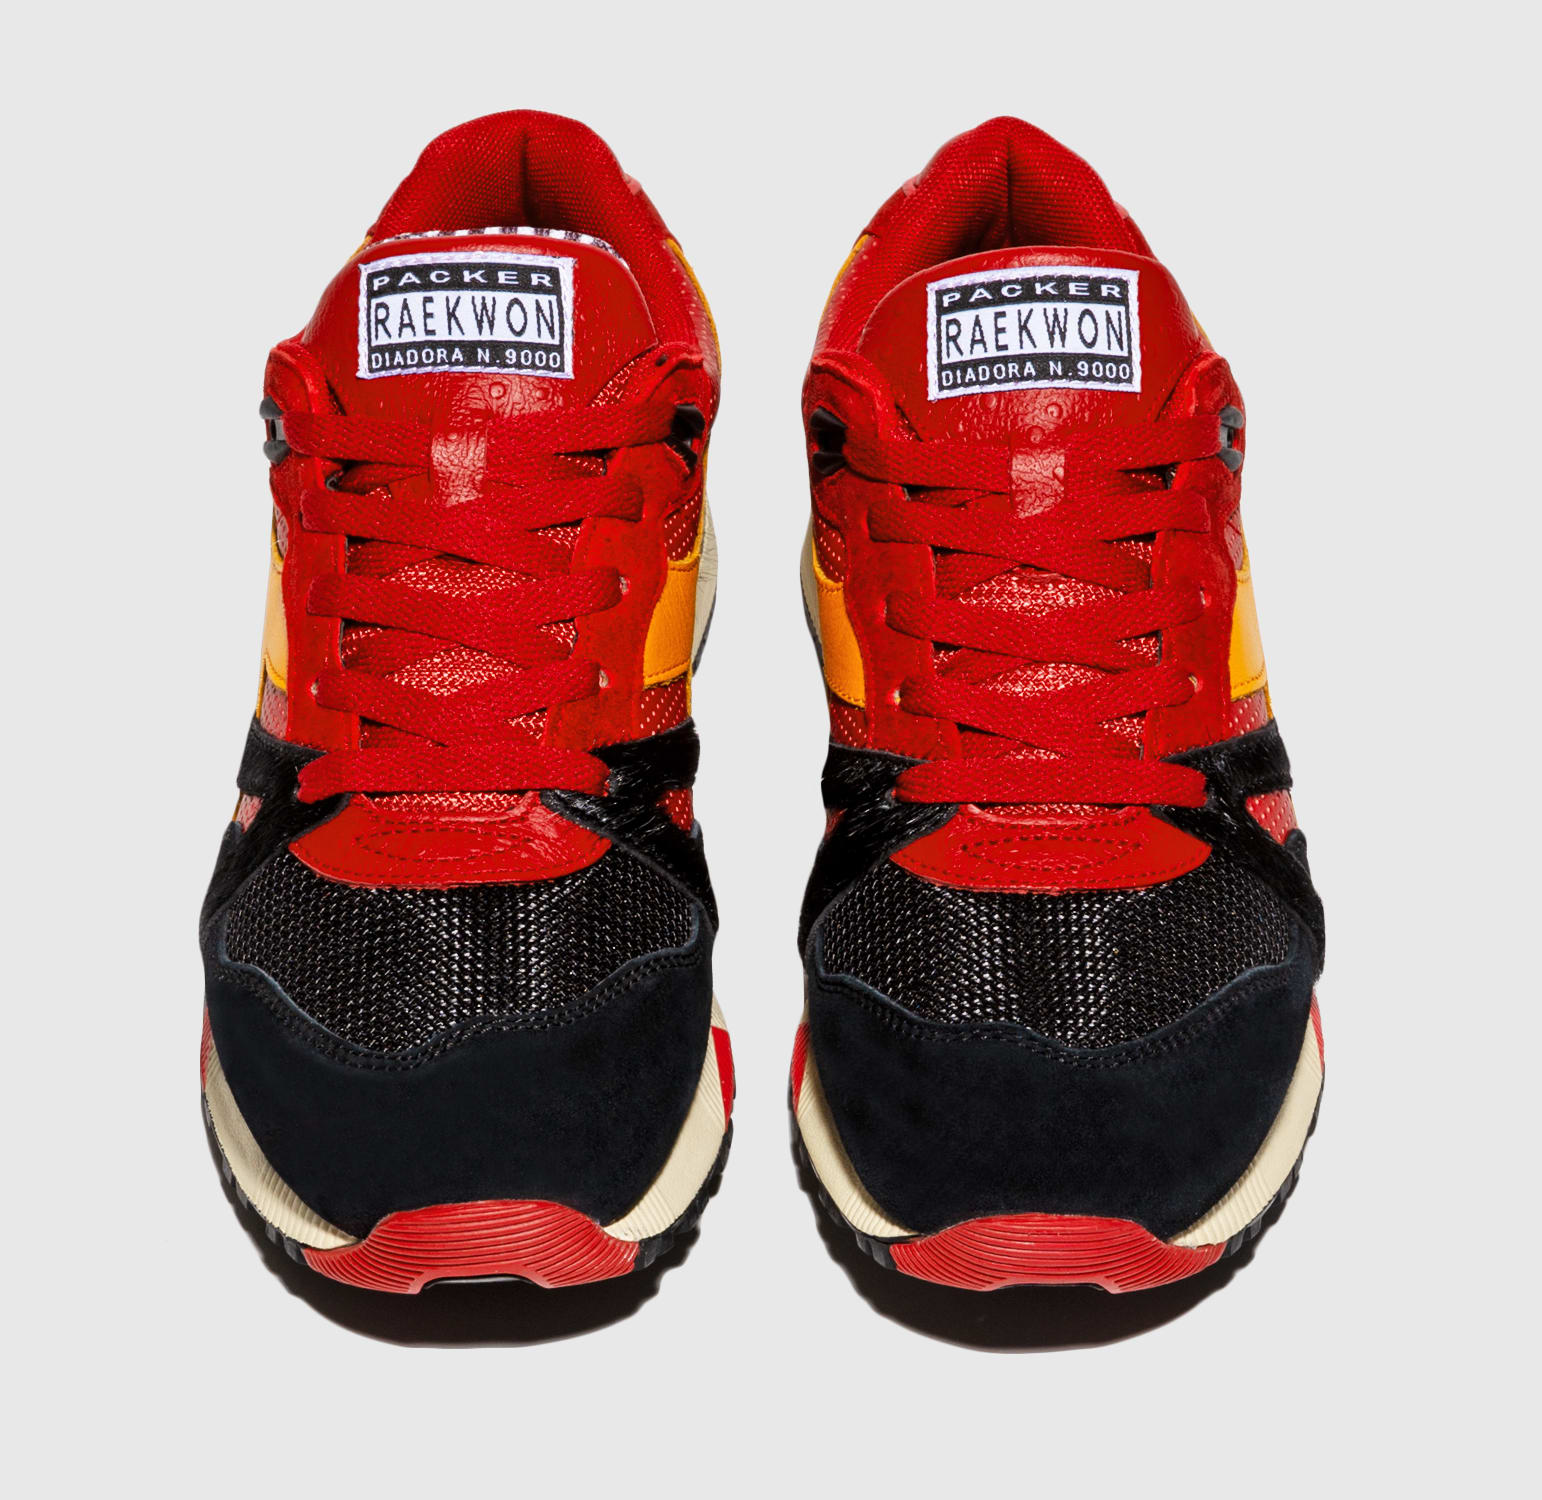 Packer Shoes x Raekwon x Diadora x N.9000 'Cuban Linx' Release 